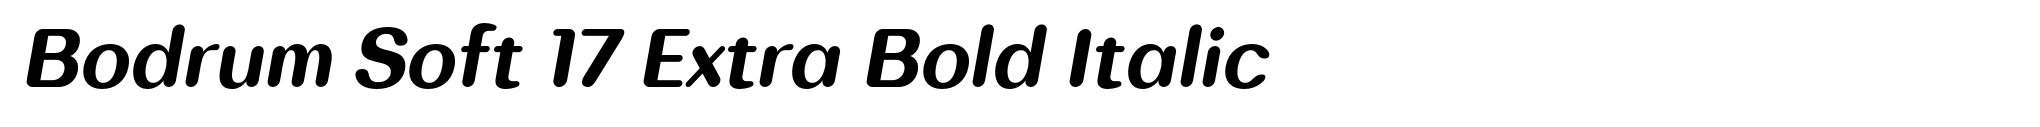 Bodrum Soft 17 Extra Bold Italic image